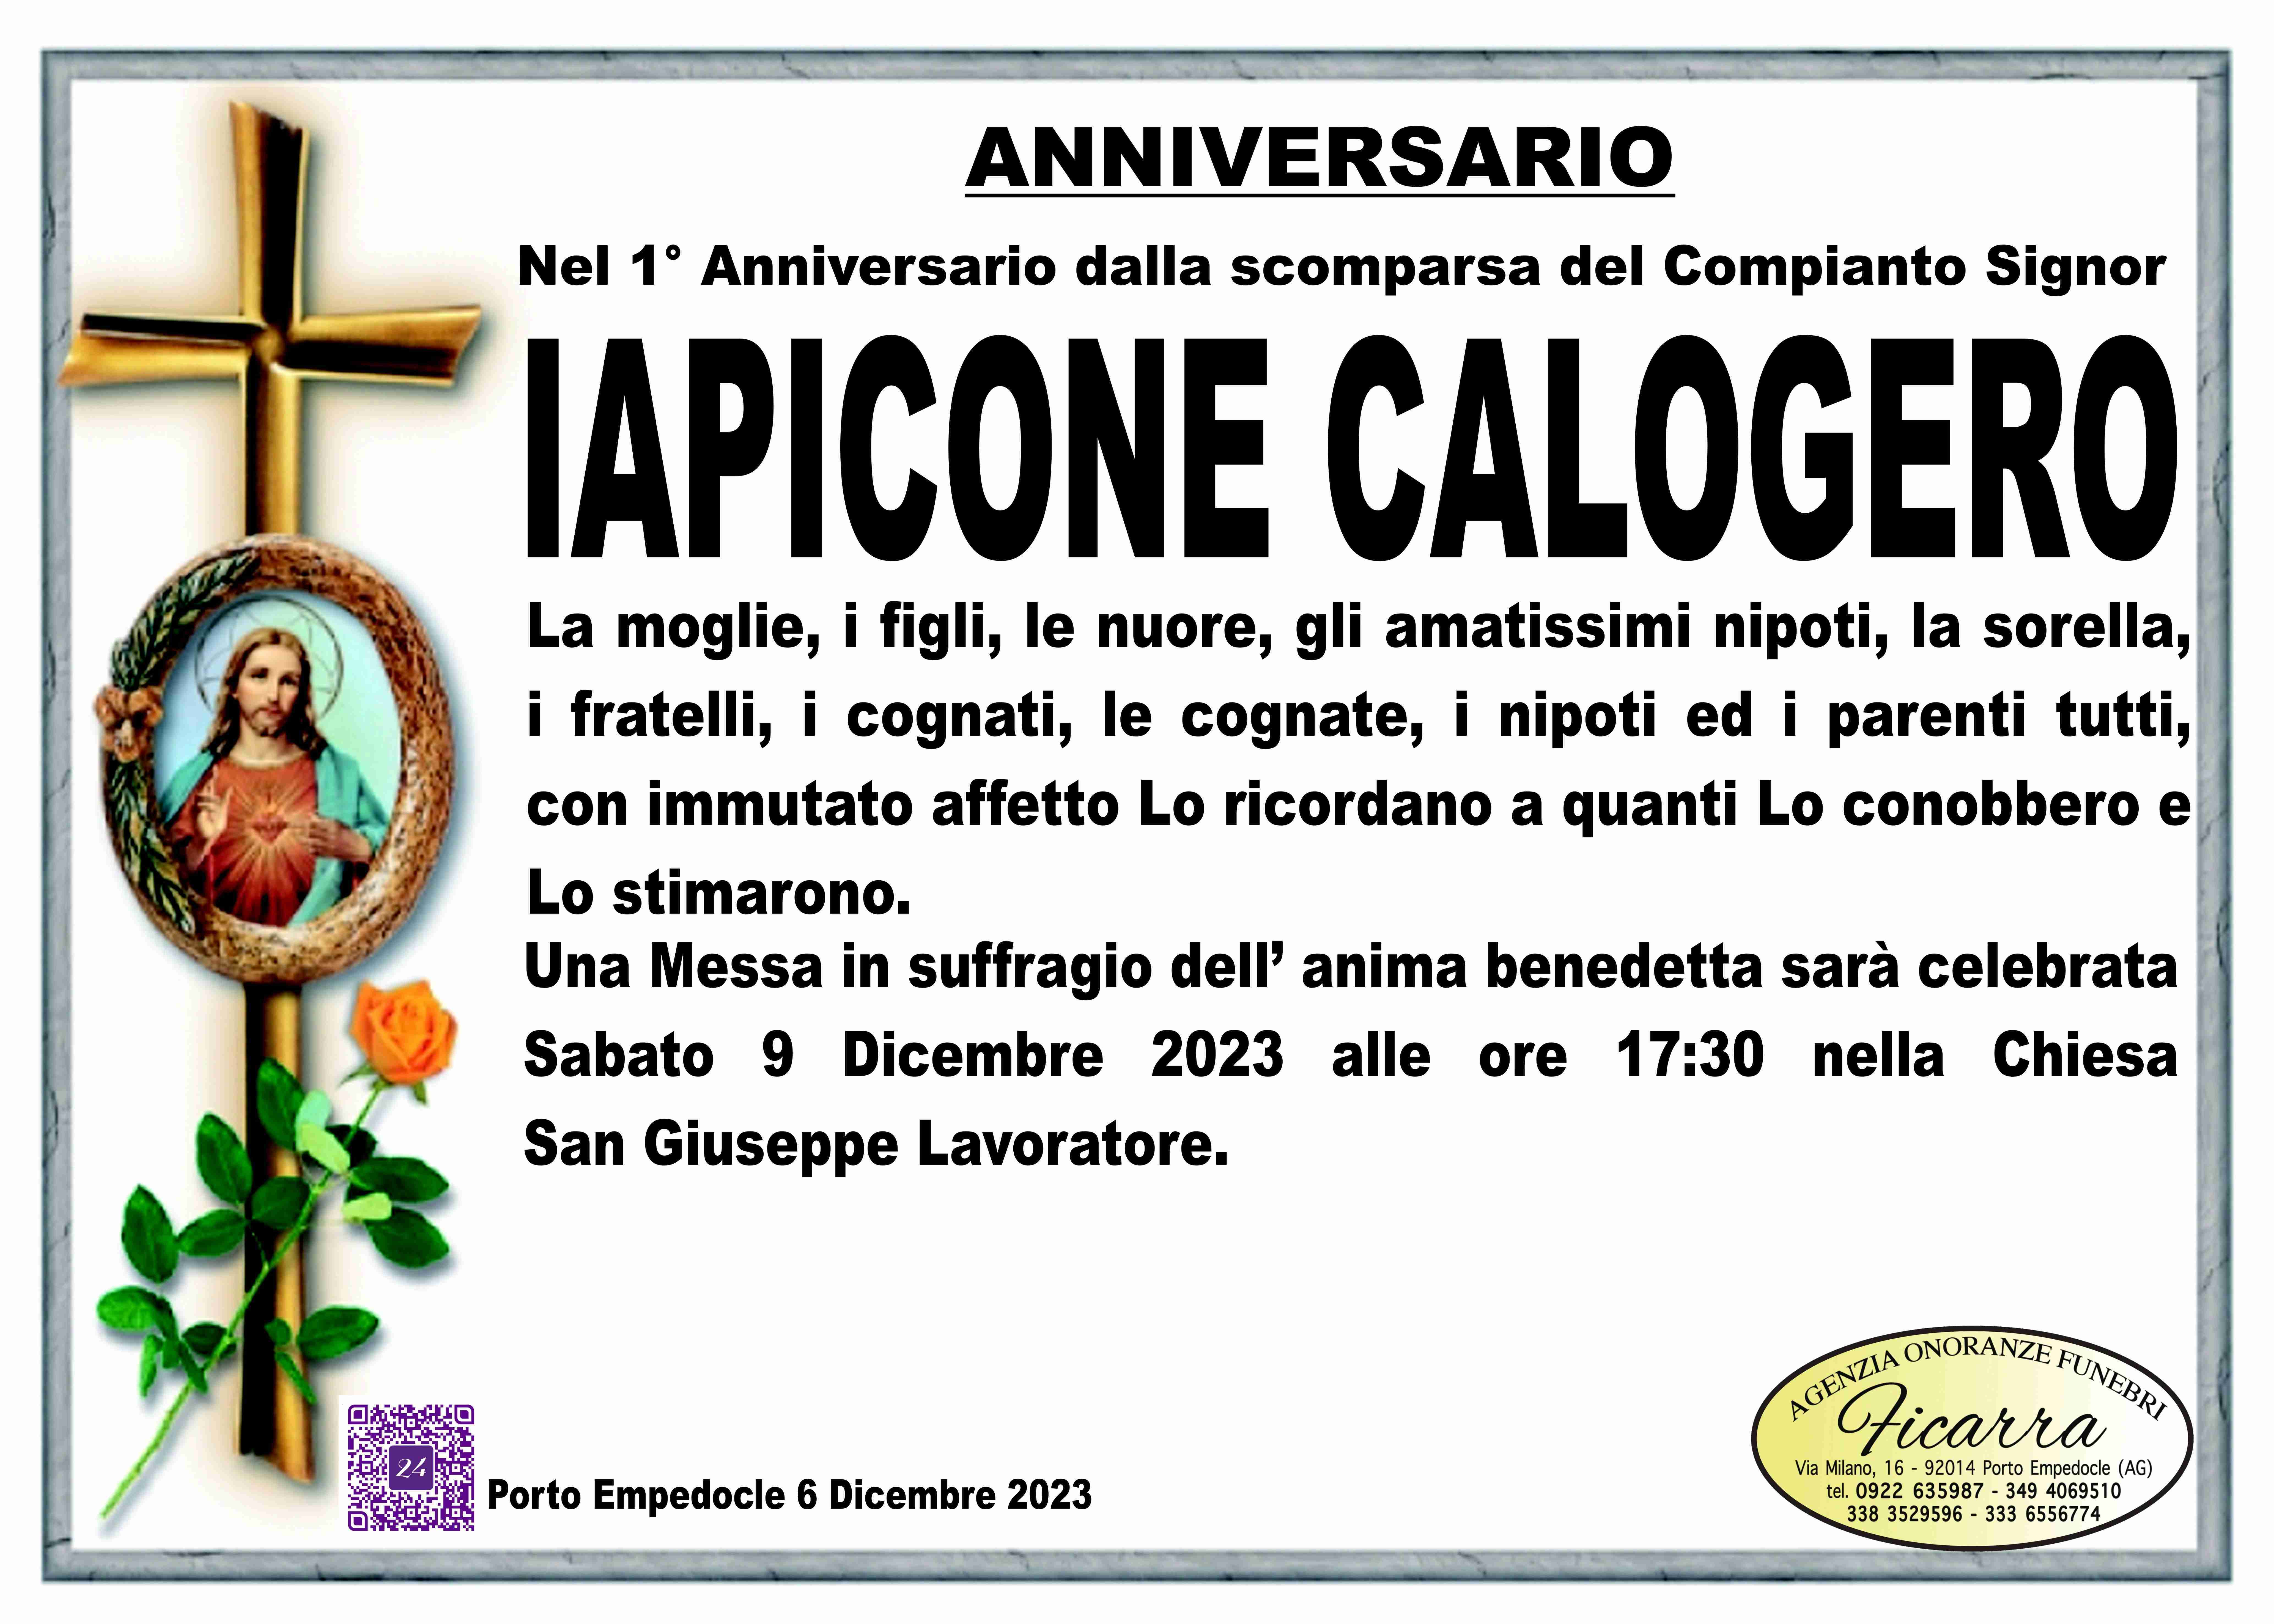 Calogero Iapicone